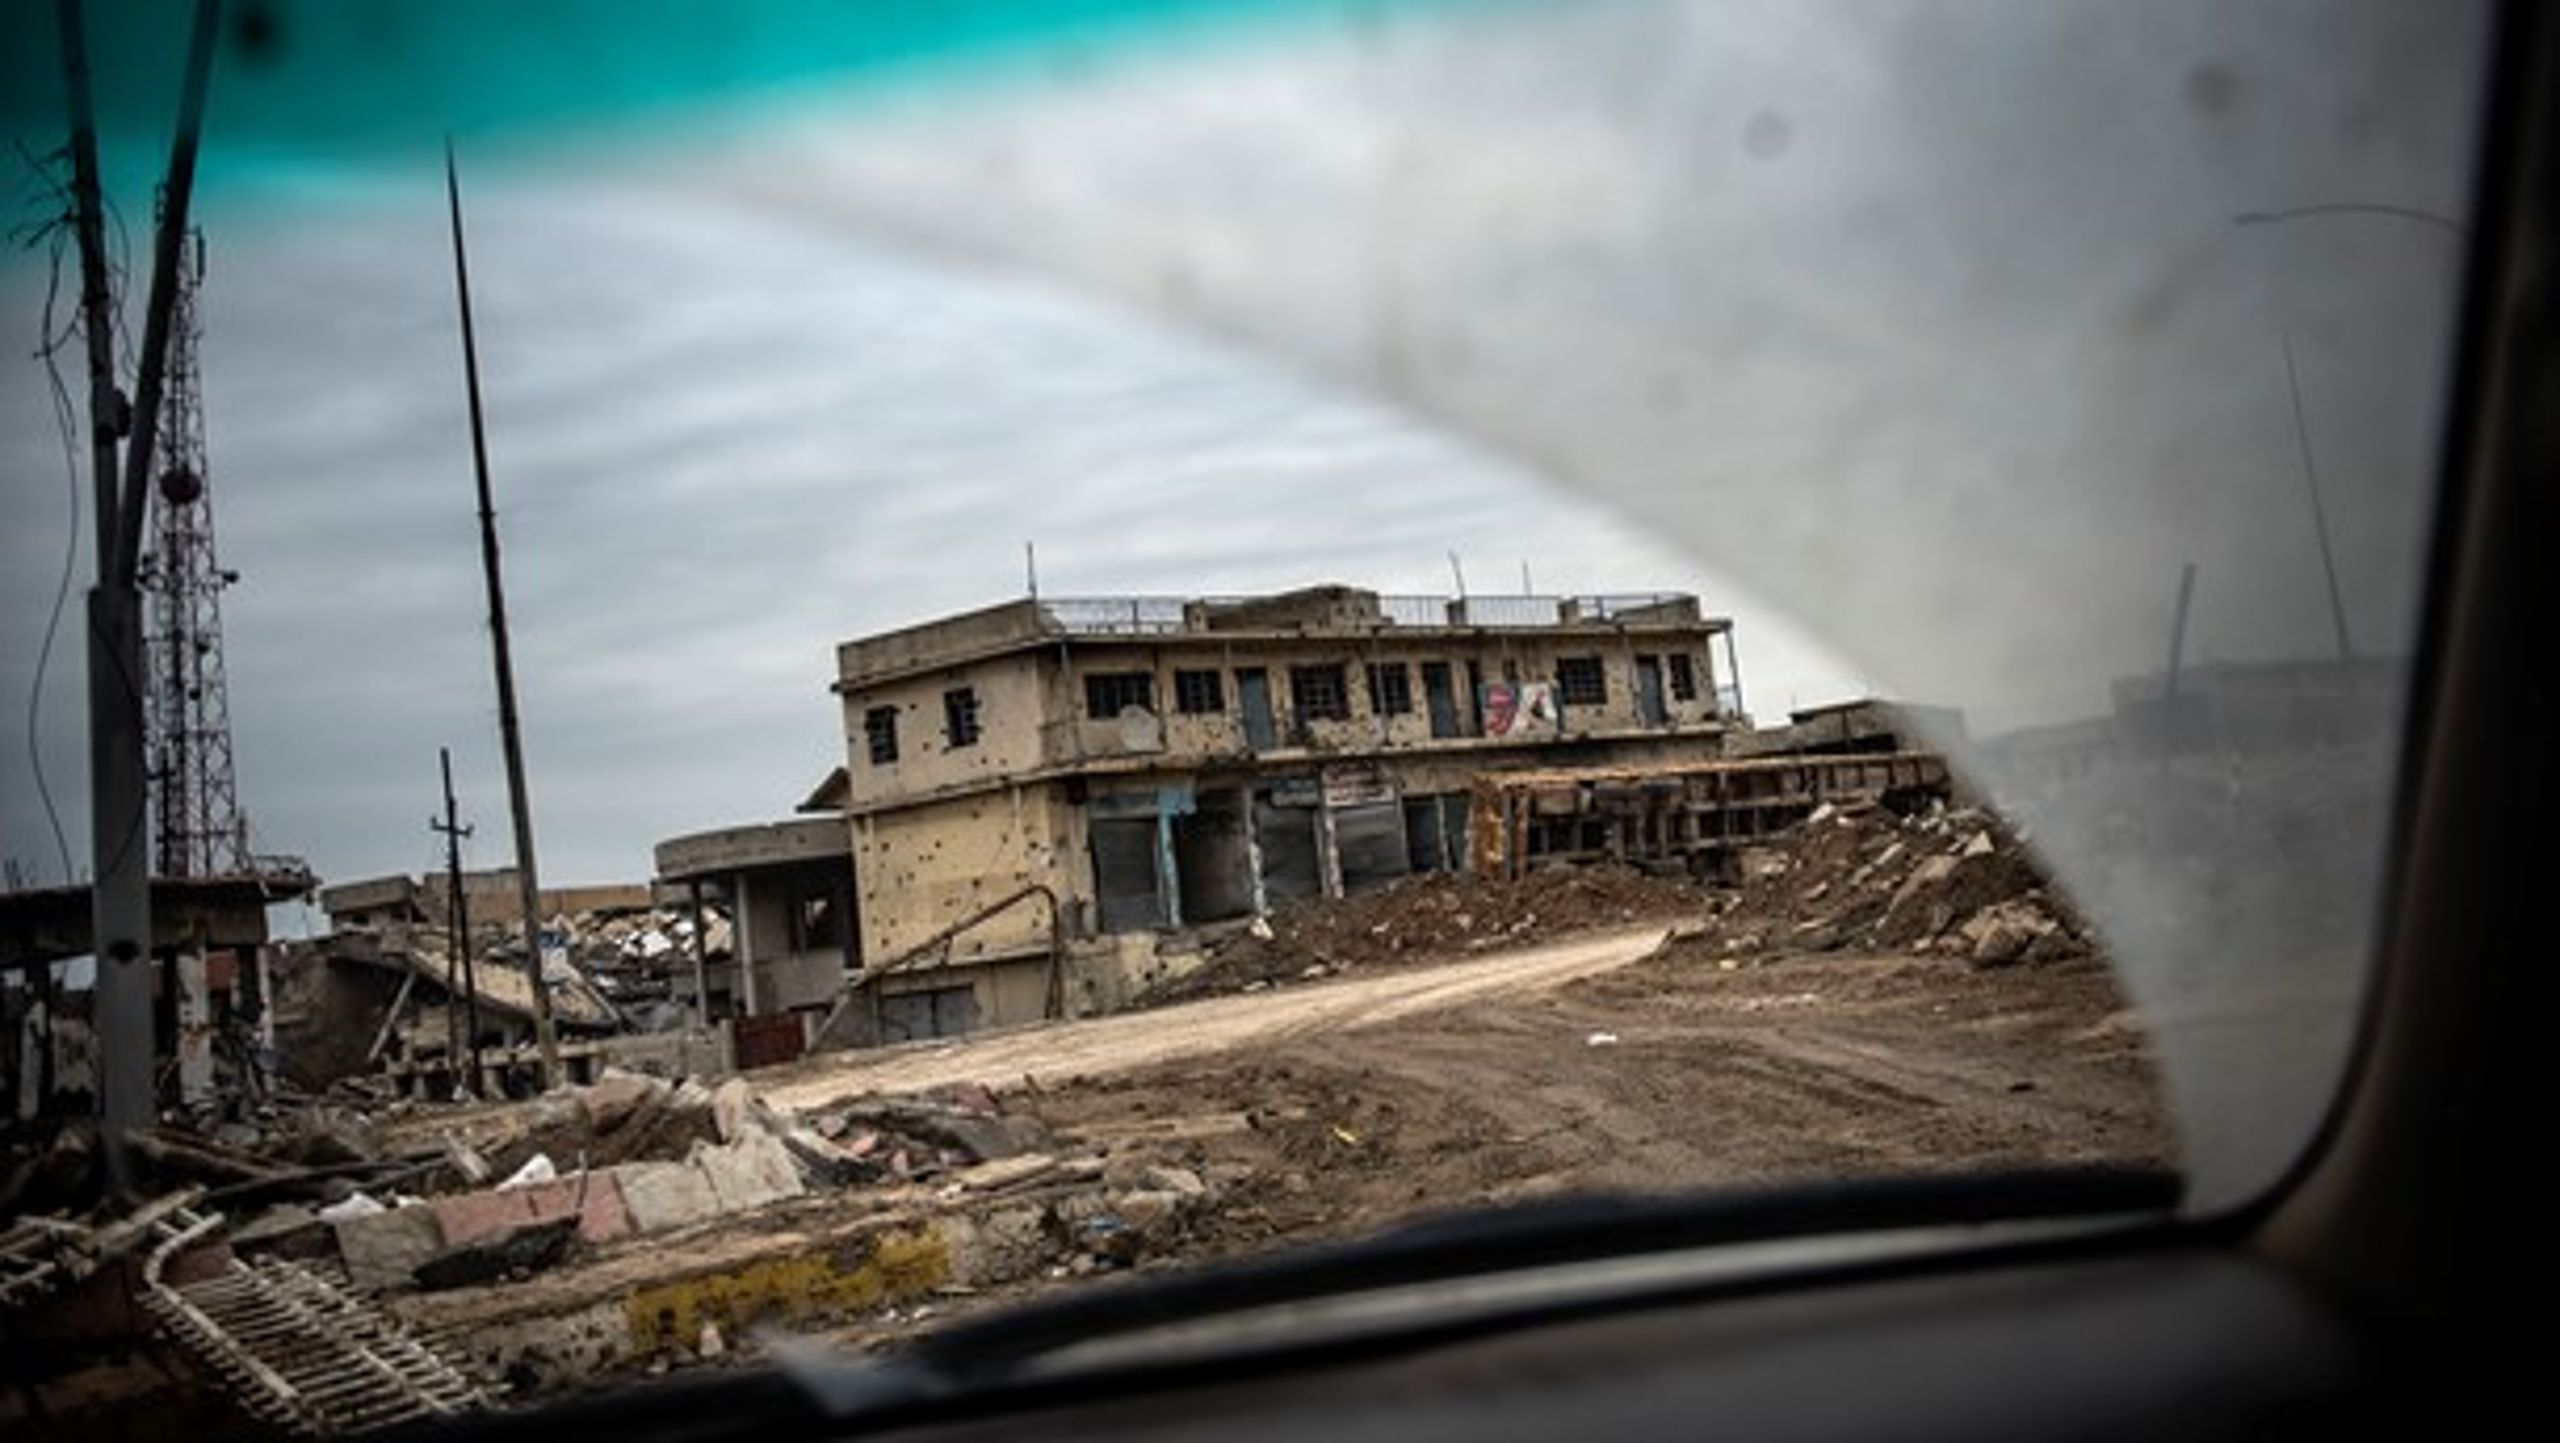 Ødelæggelser i udkanten af Mosul efter kampene for at overtage byen fra ISIS (Islamisk Stat). Men nu skal danske ulandsmidler bruges til at genopbygge landet, mener Venstre.